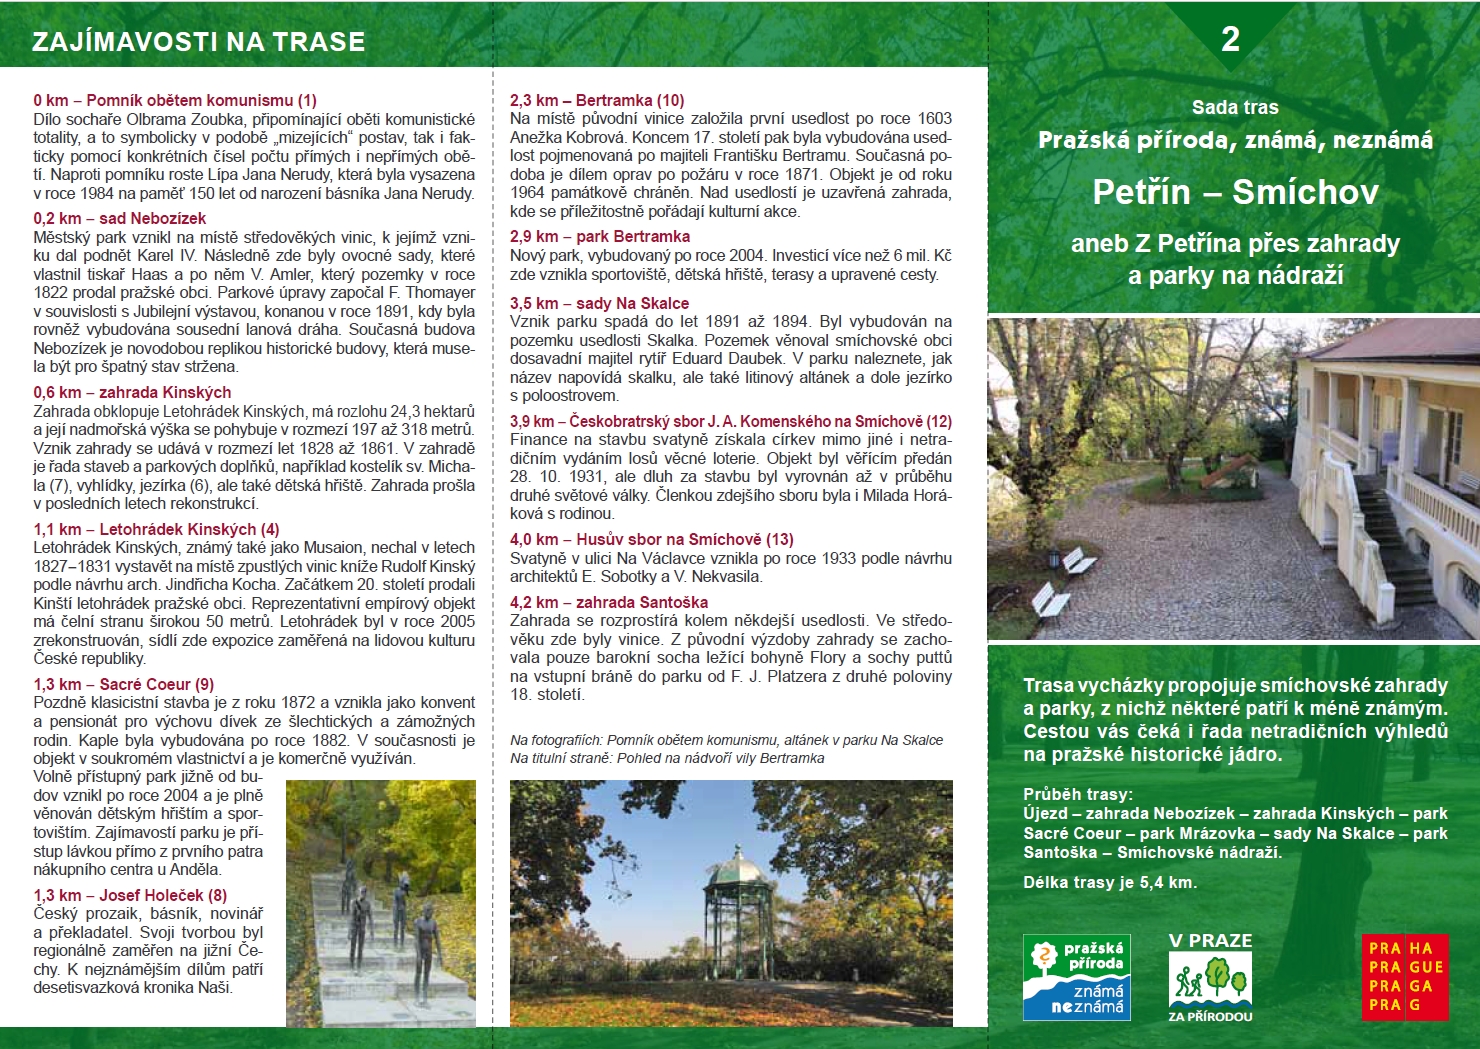 Informační materiál k trase Petřín - Smíchov aneb Z Petřína přes zahrady a parky na nádraží